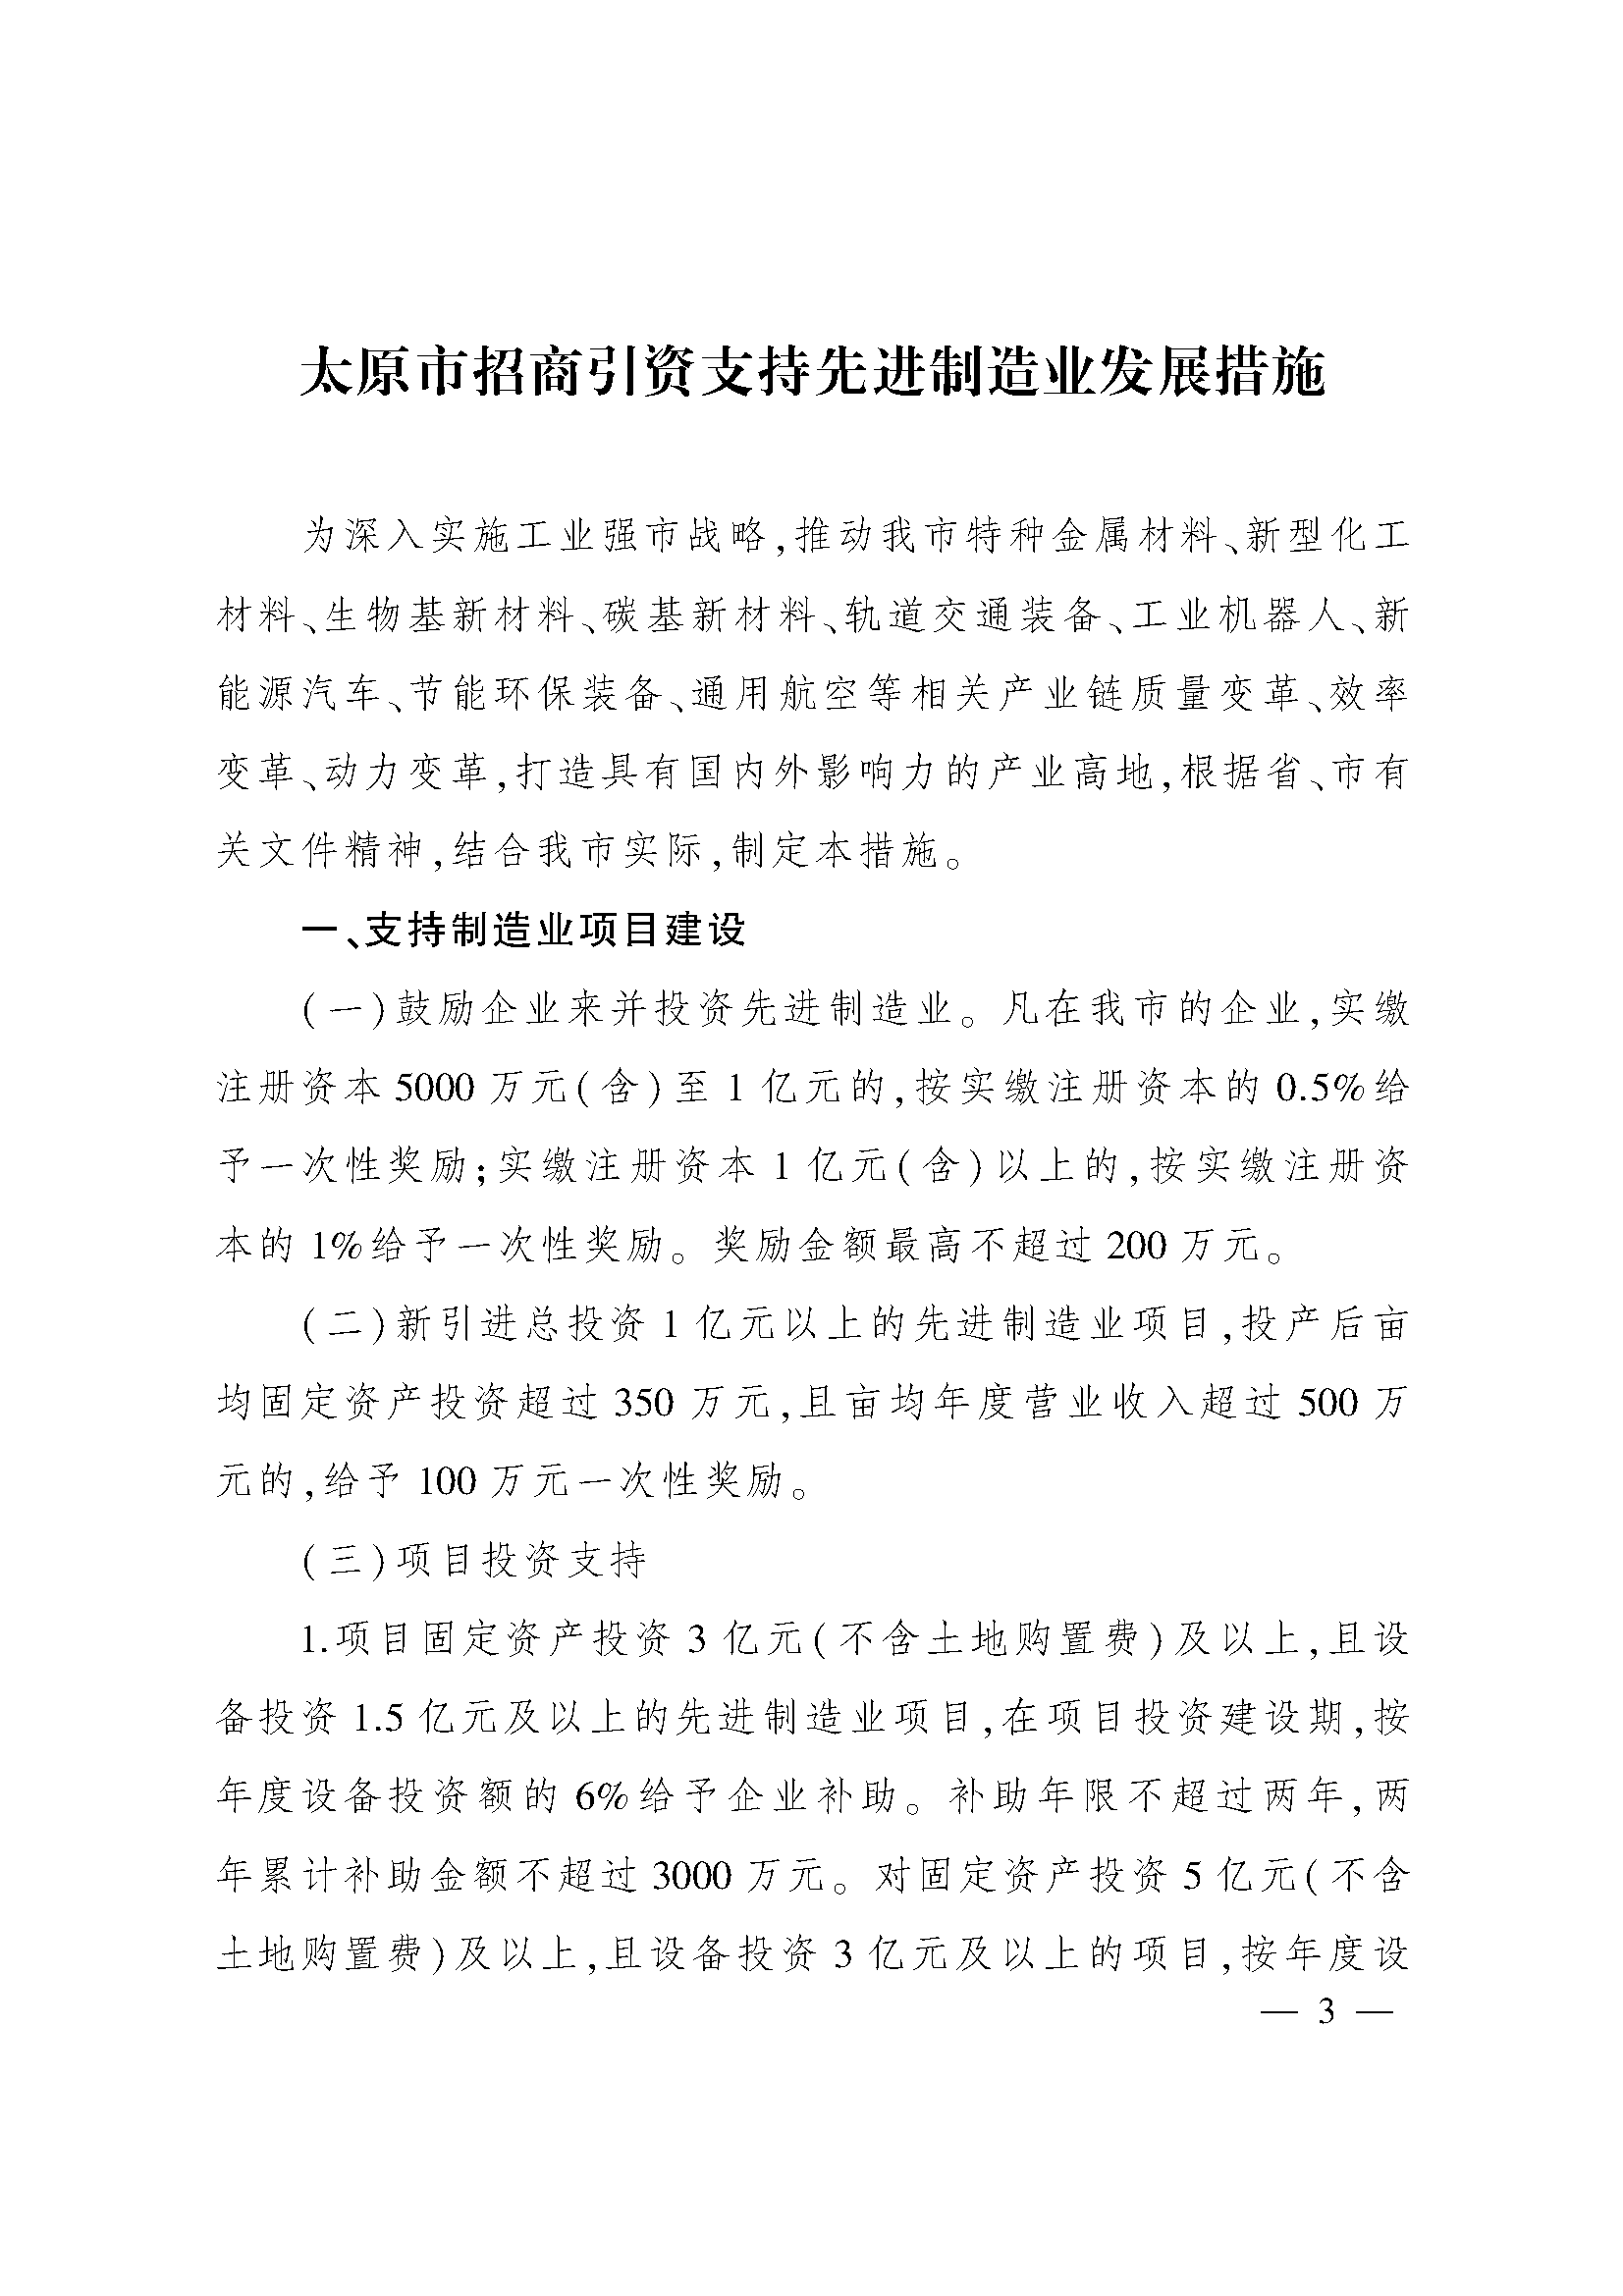 太原市人民政府办公室关于印发太原市招商引资若干措施的通知(图3)